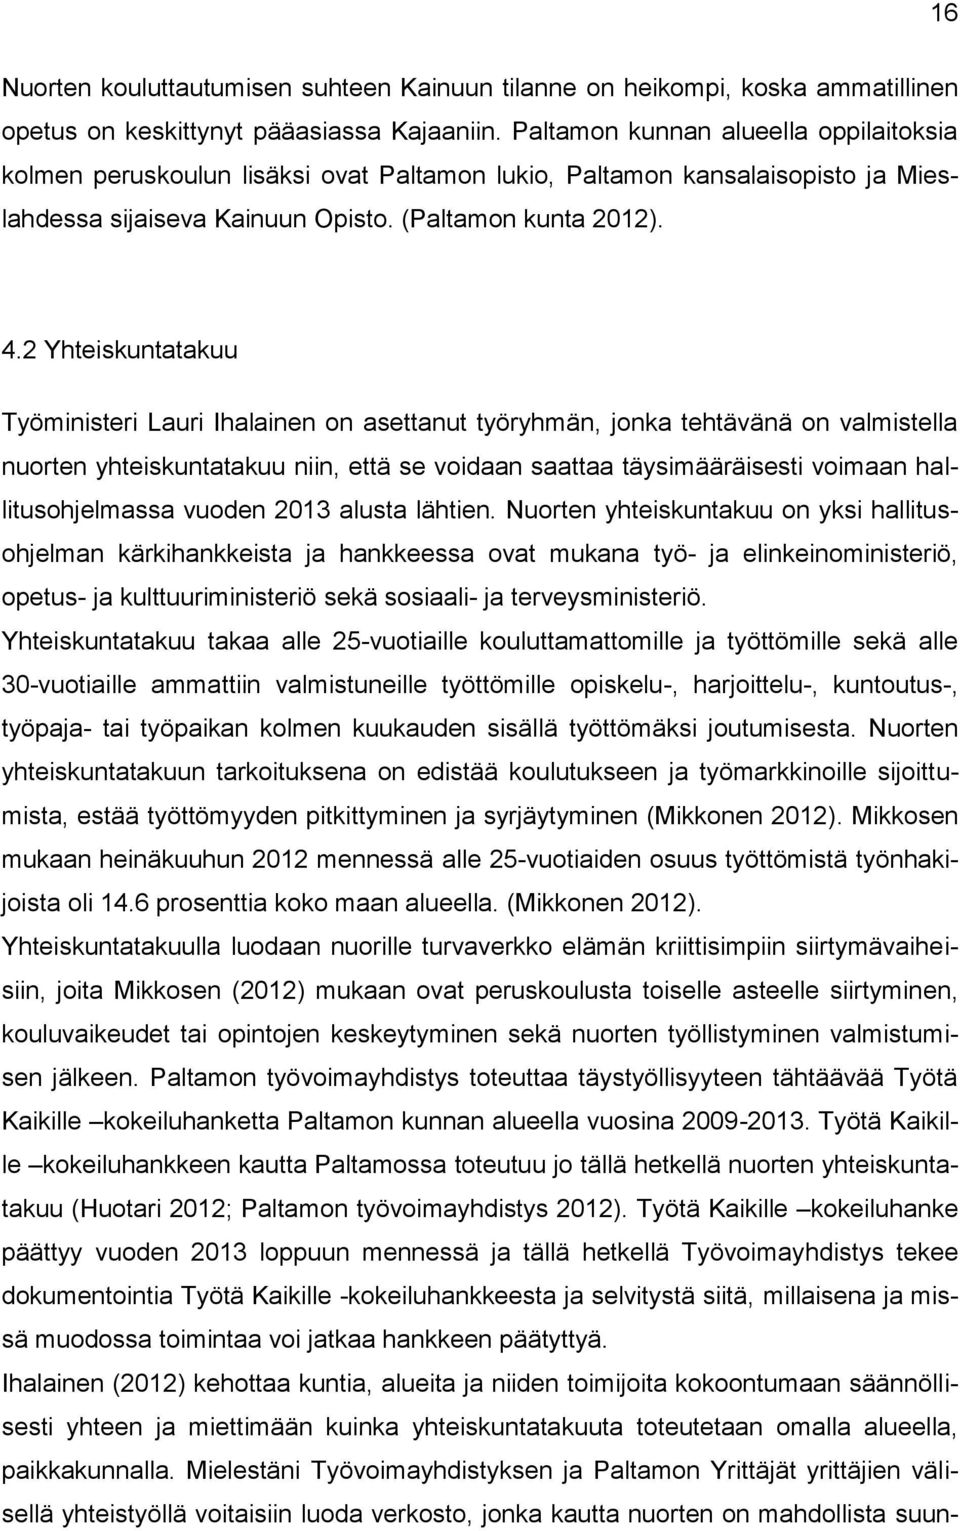 2 Yhteiskuntatakuu Työministeri Lauri Ihalainen on asettanut työryhmän, jonka tehtävänä on valmistella nuorten yhteiskuntatakuu niin, että se voidaan saattaa täysimääräisesti voimaan